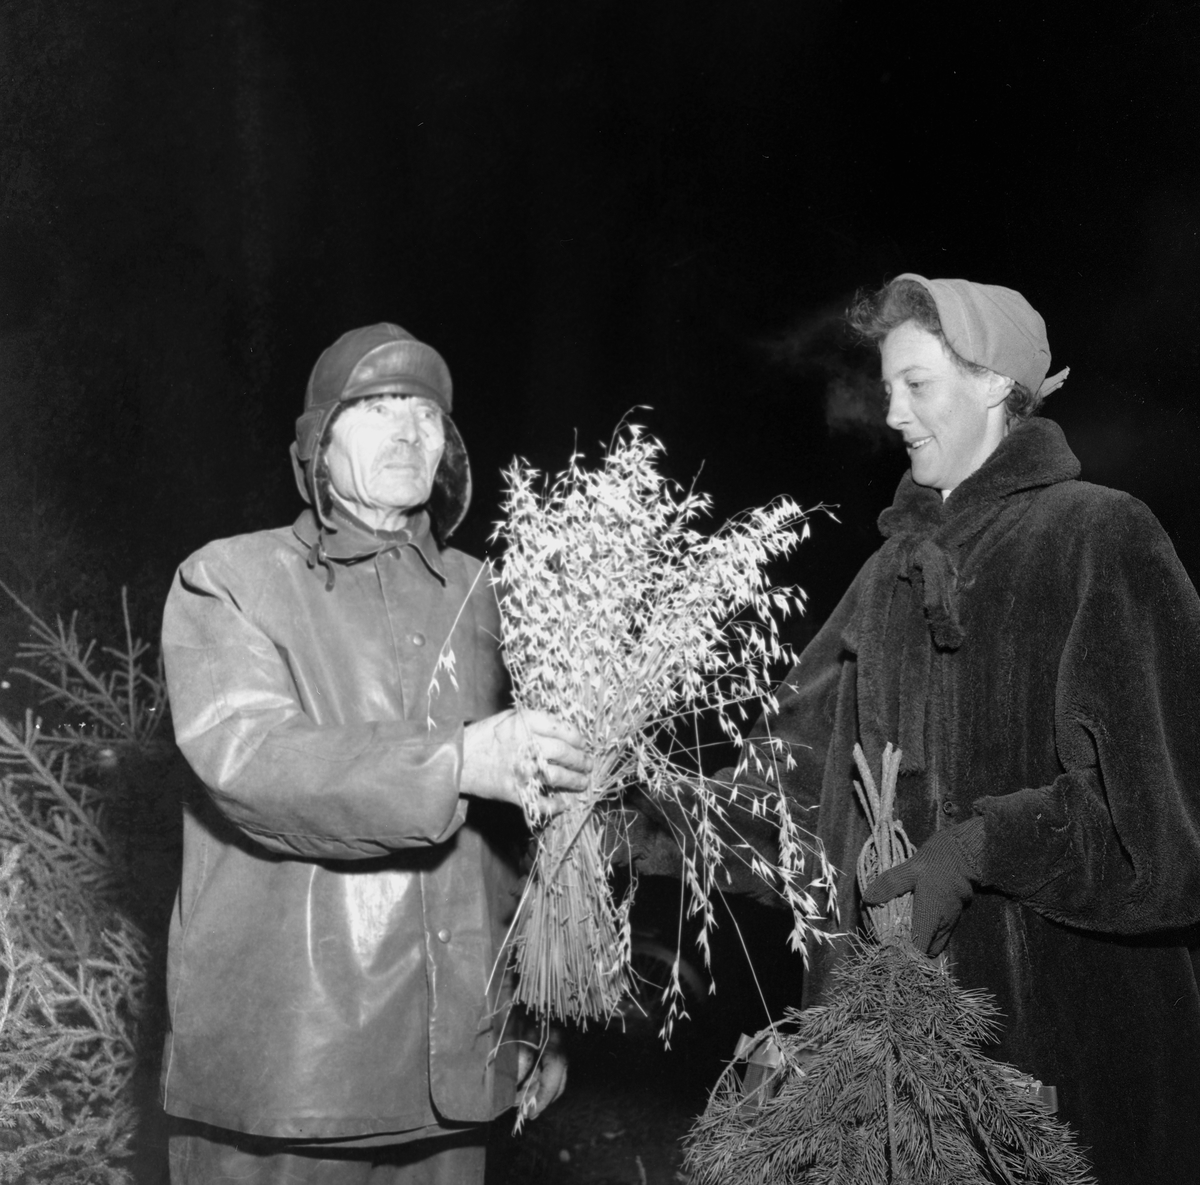 Julgransförsäljning.
December 1956.